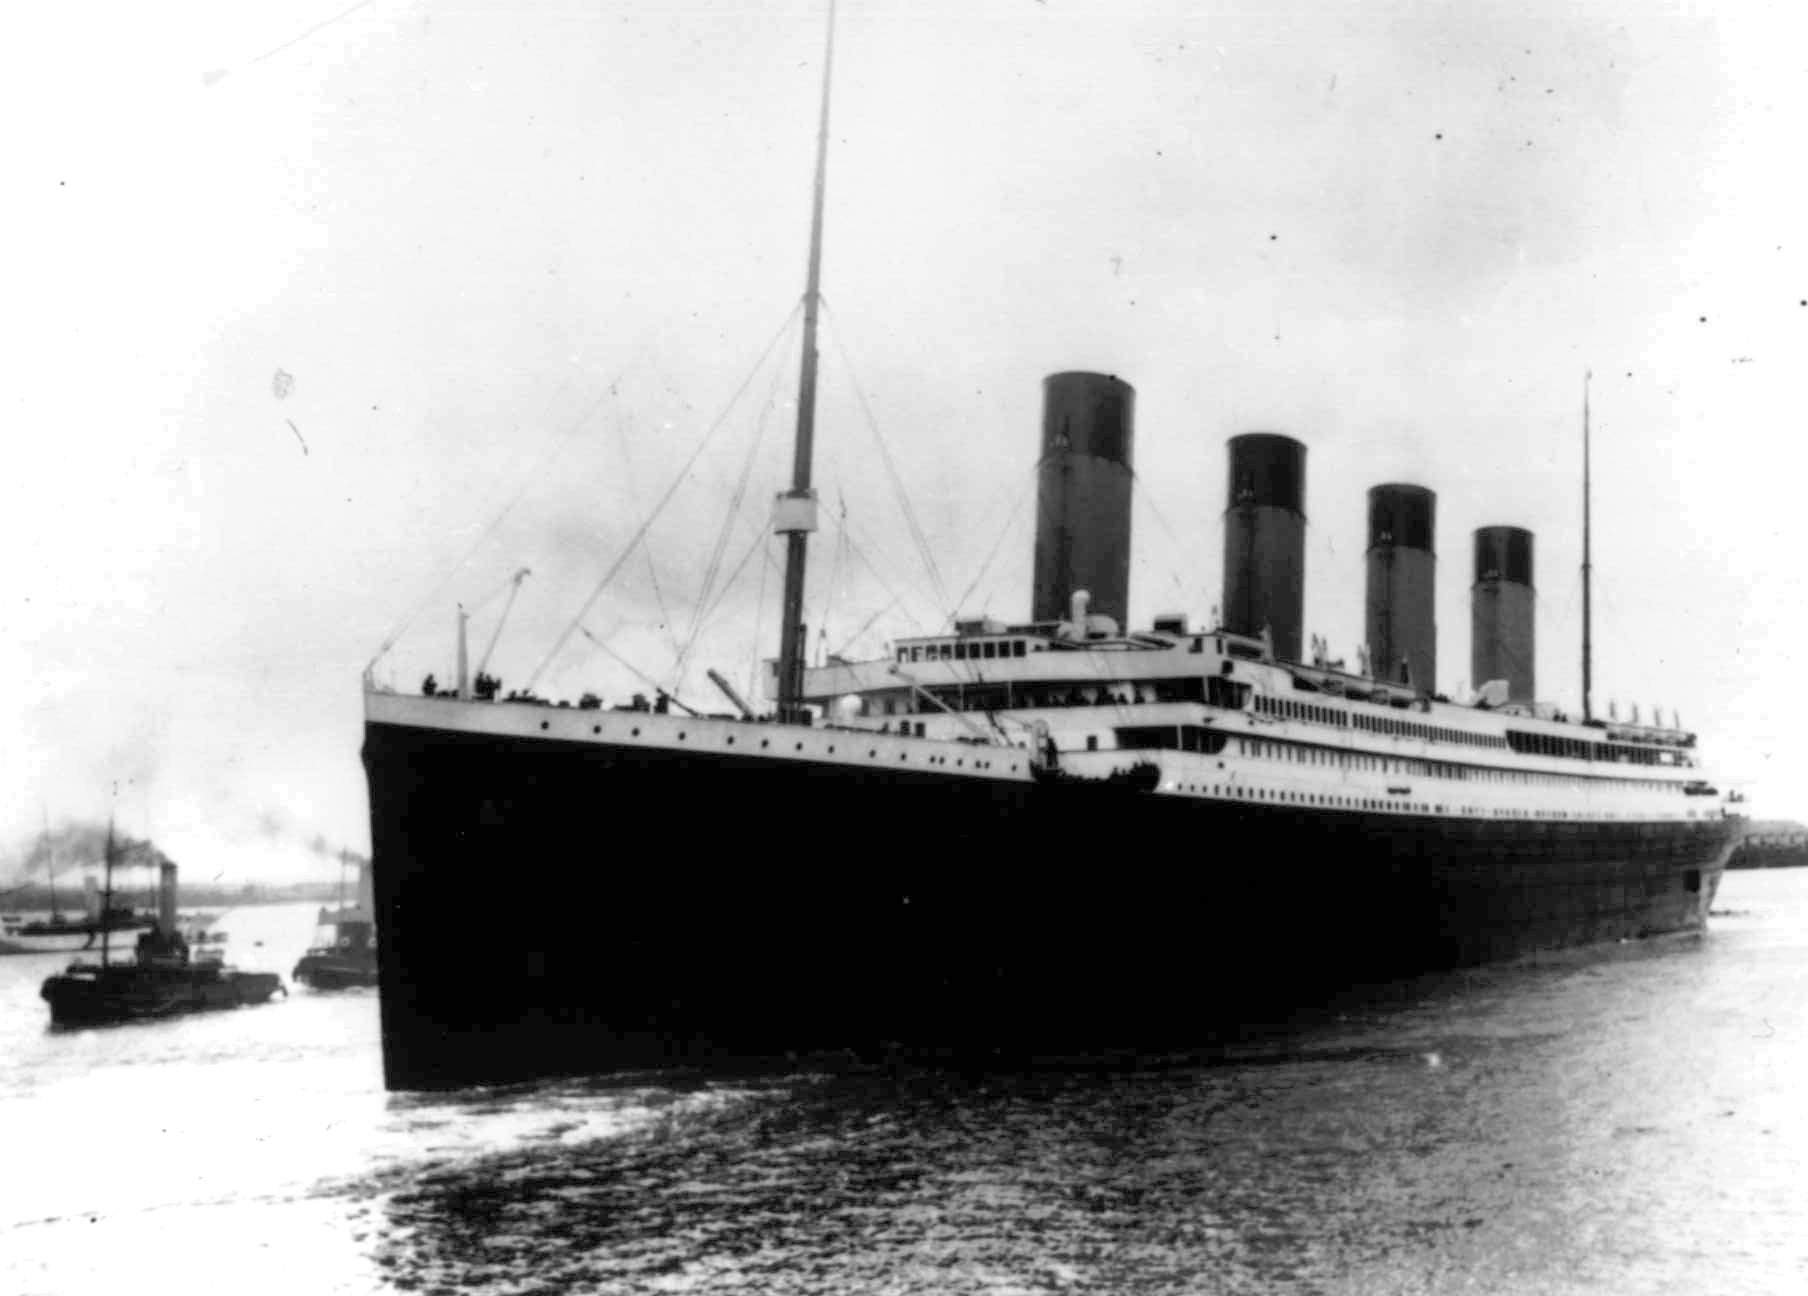 År 1912 lämnade det berömda Titanic-fartyget Englands kust för att segla mot Amerika - men det slutade i katastrof.